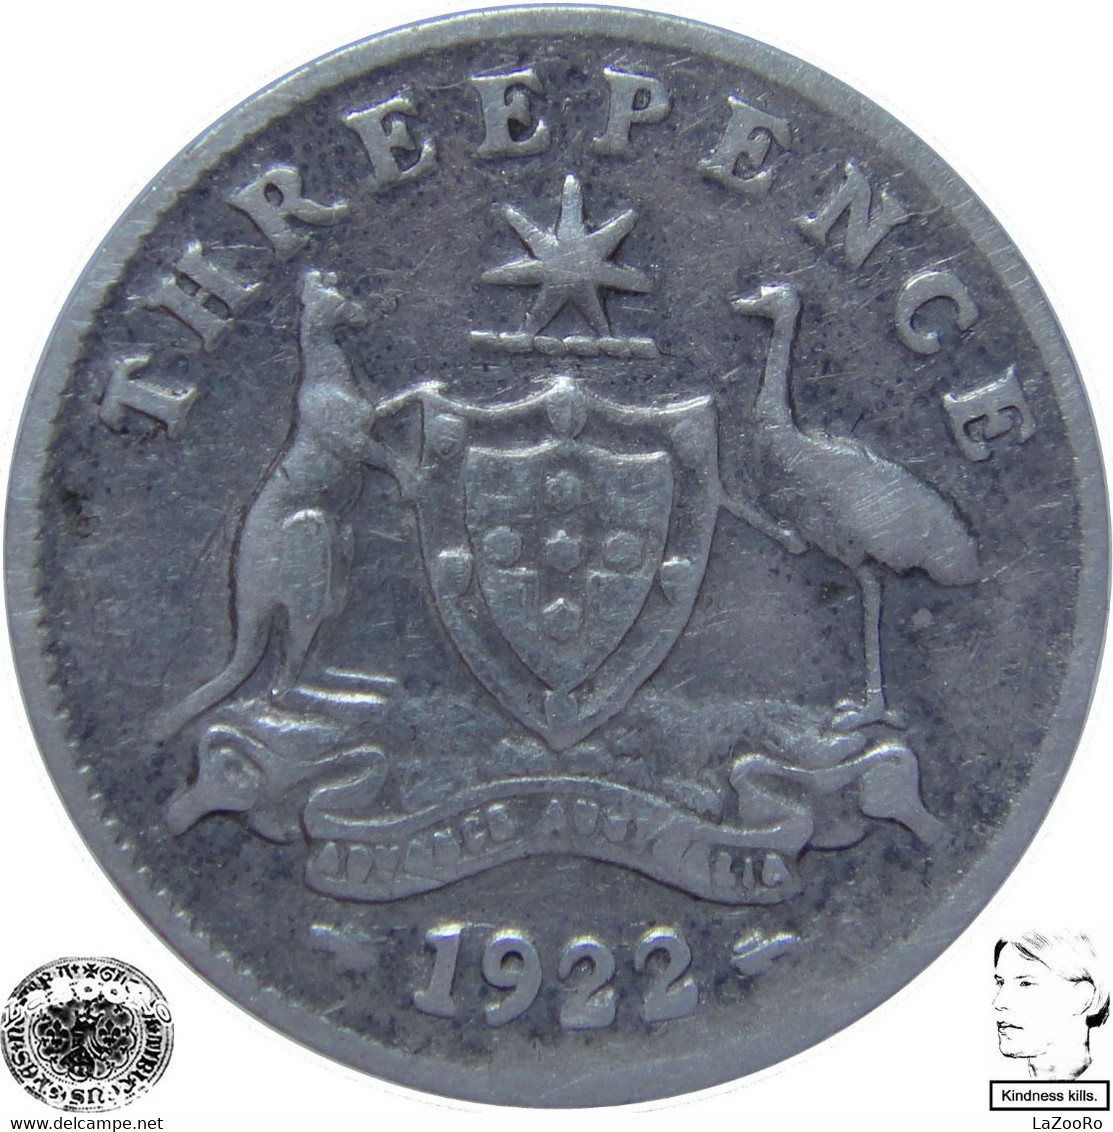 LaZooRo: Australia 3 Pence 1922 VF - Silver - Threepence